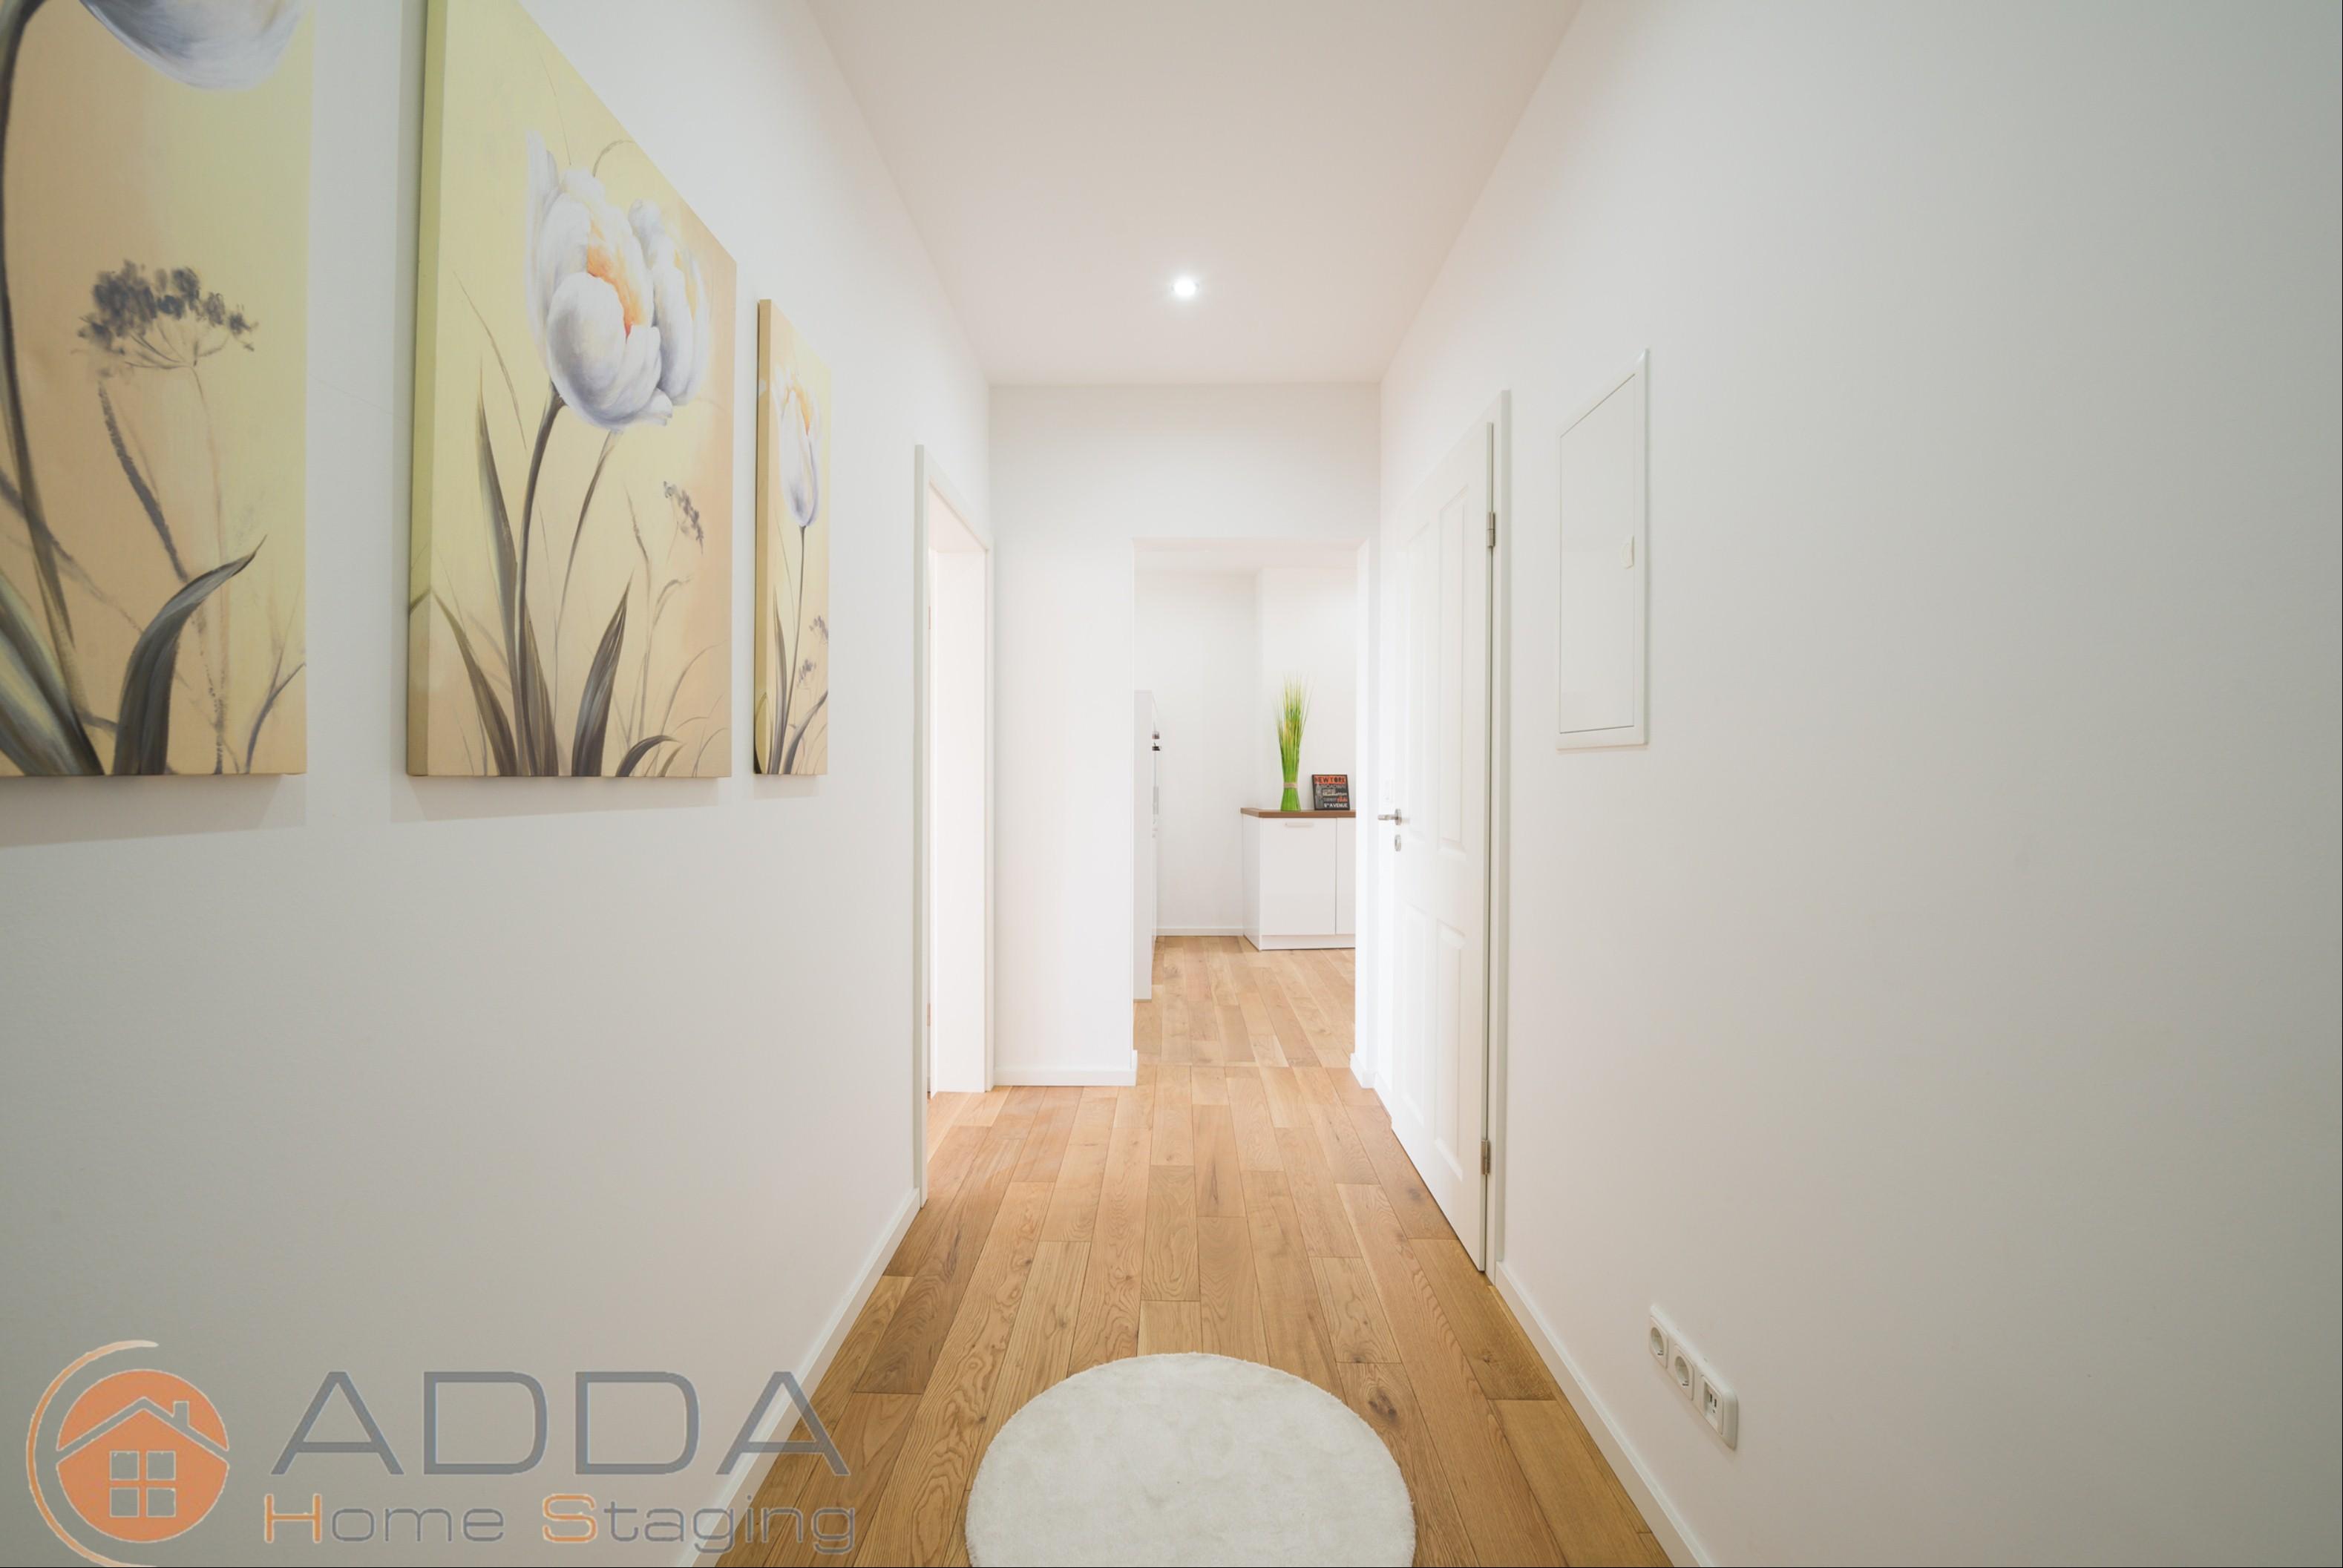 Flur nach dem Home Staging #empfangsbereich ©ADDA Home Staging